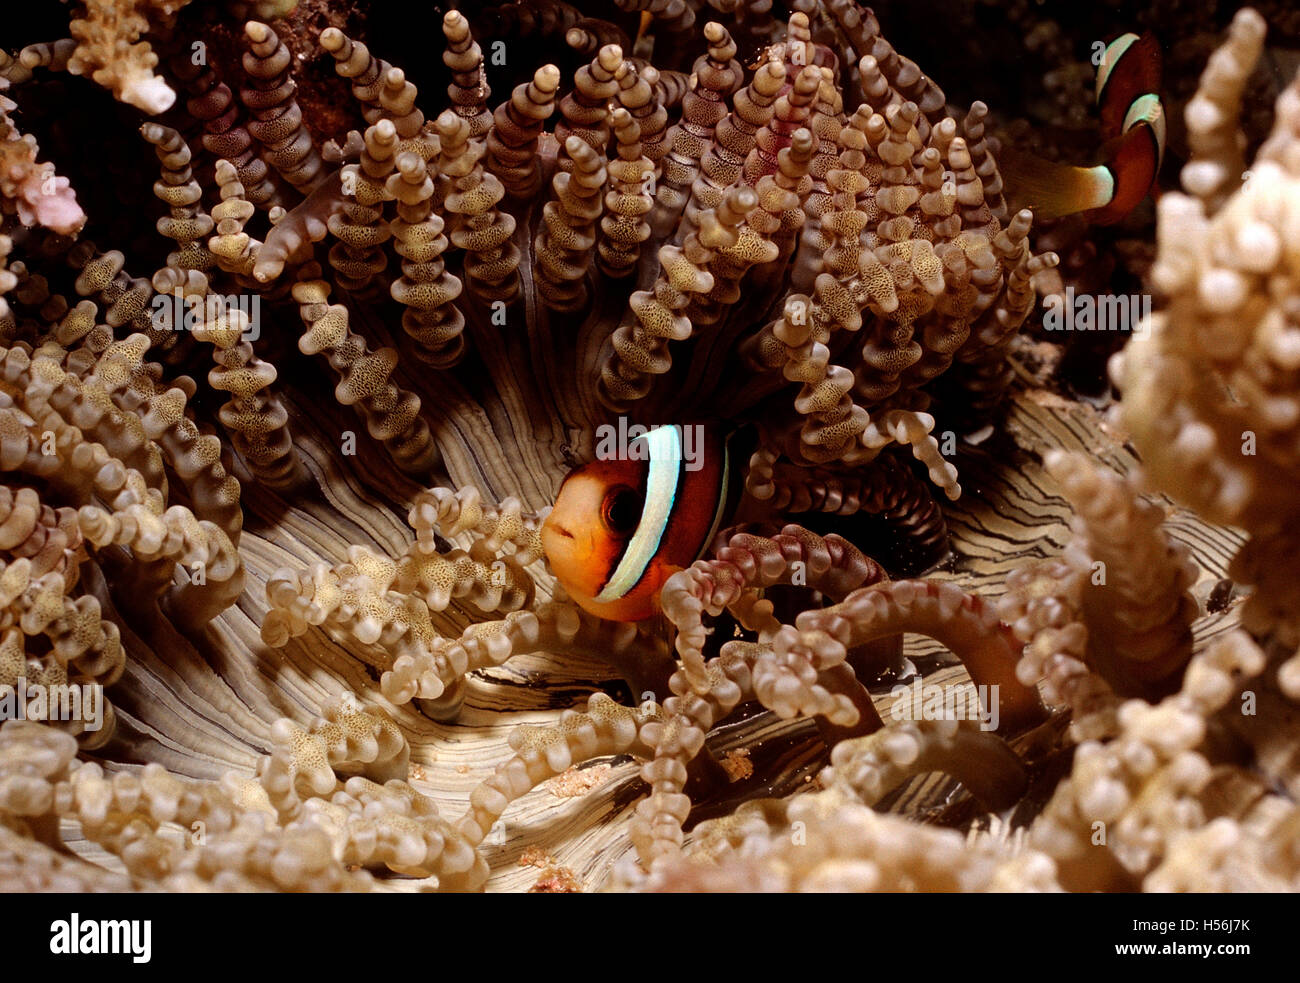 Clarks anemonefish (Amphiprion clarkii, Heteractis aurora), Bali, Indian Ocean, Indonesia Stock Photo